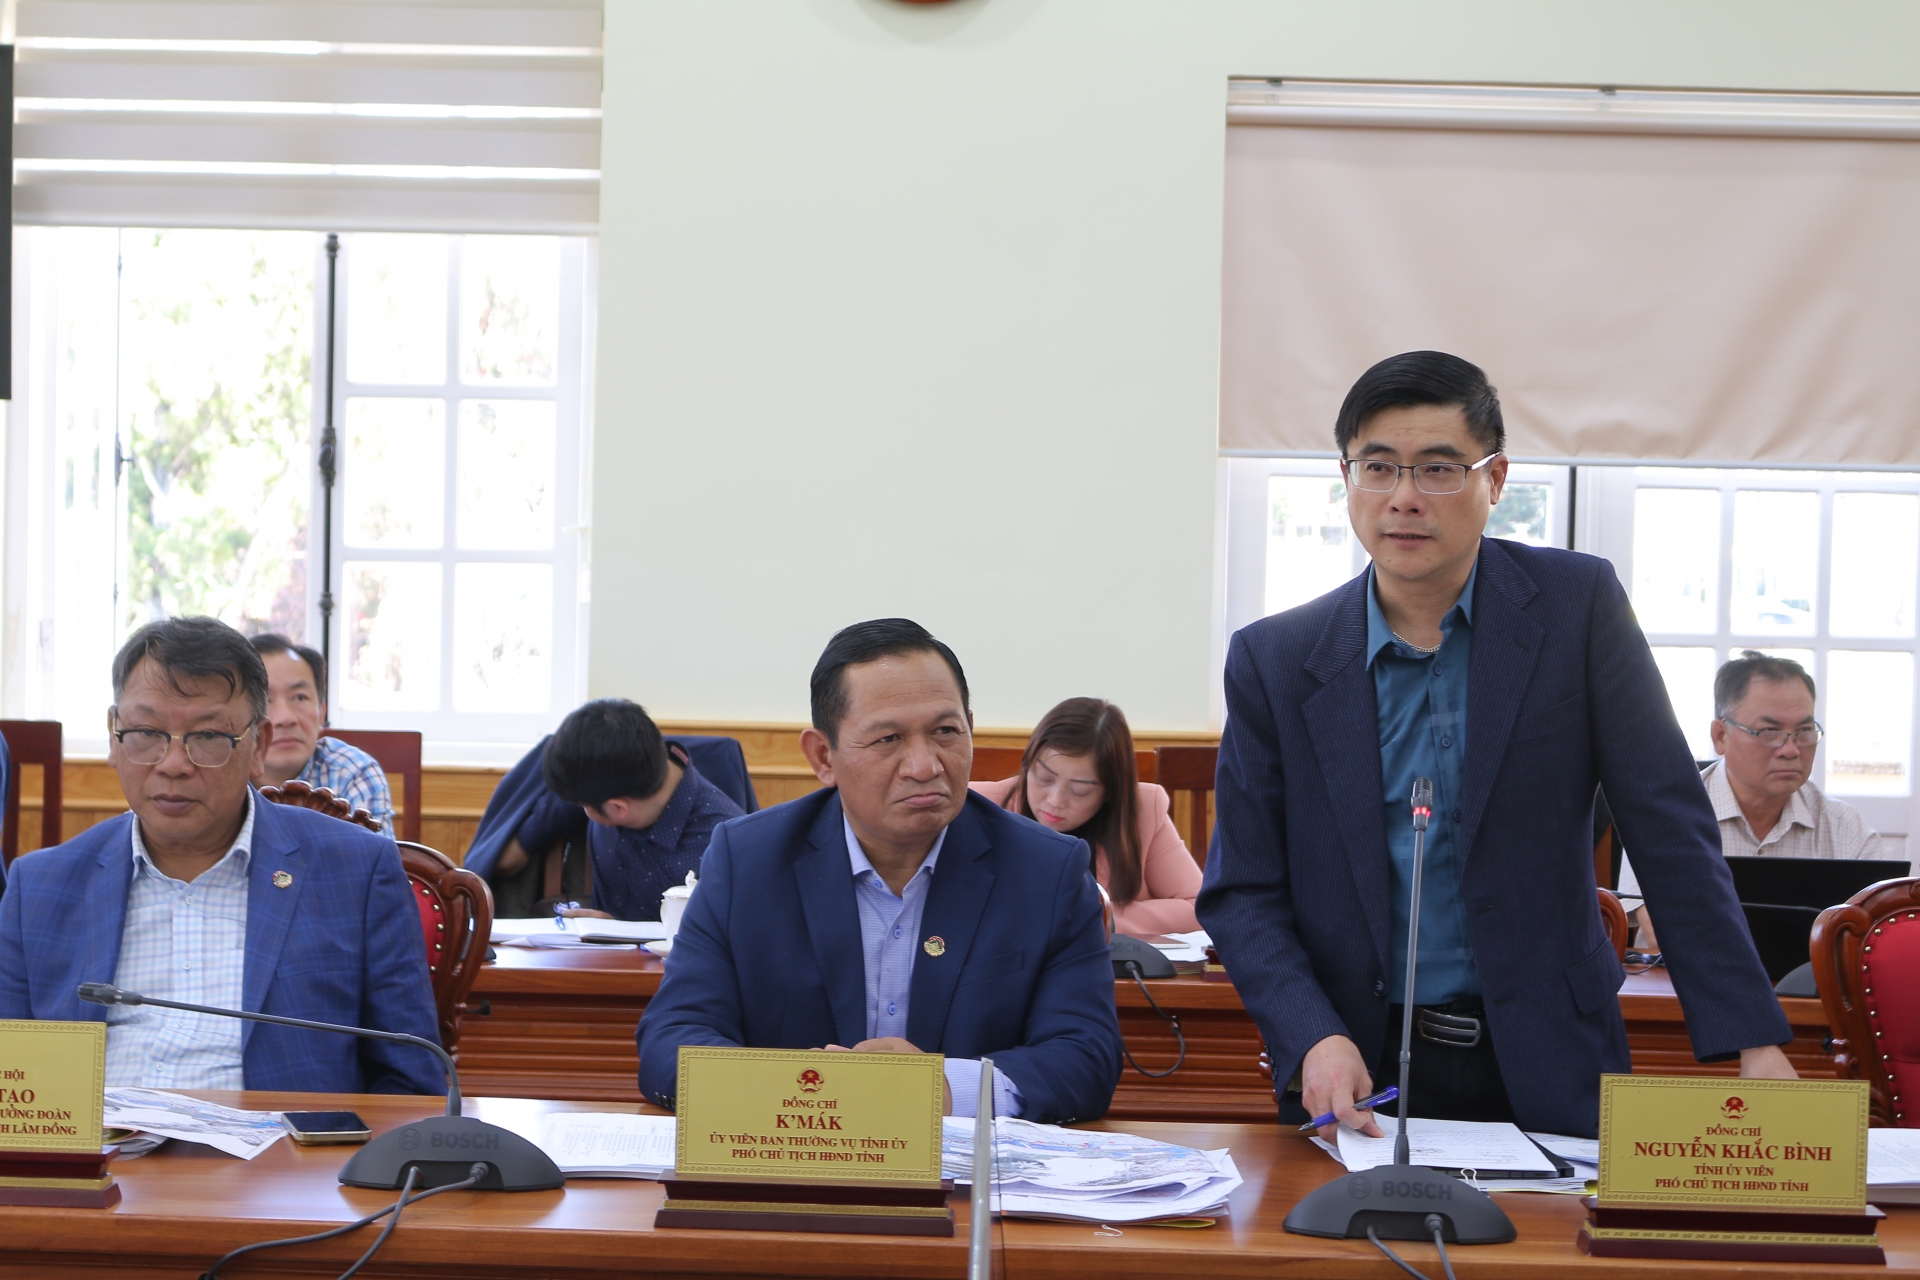 Phó Chủ tịch HĐND tỉnh Lâm Đồng Nguyễn Khắc Bình trao đổi tại buổi làm việc